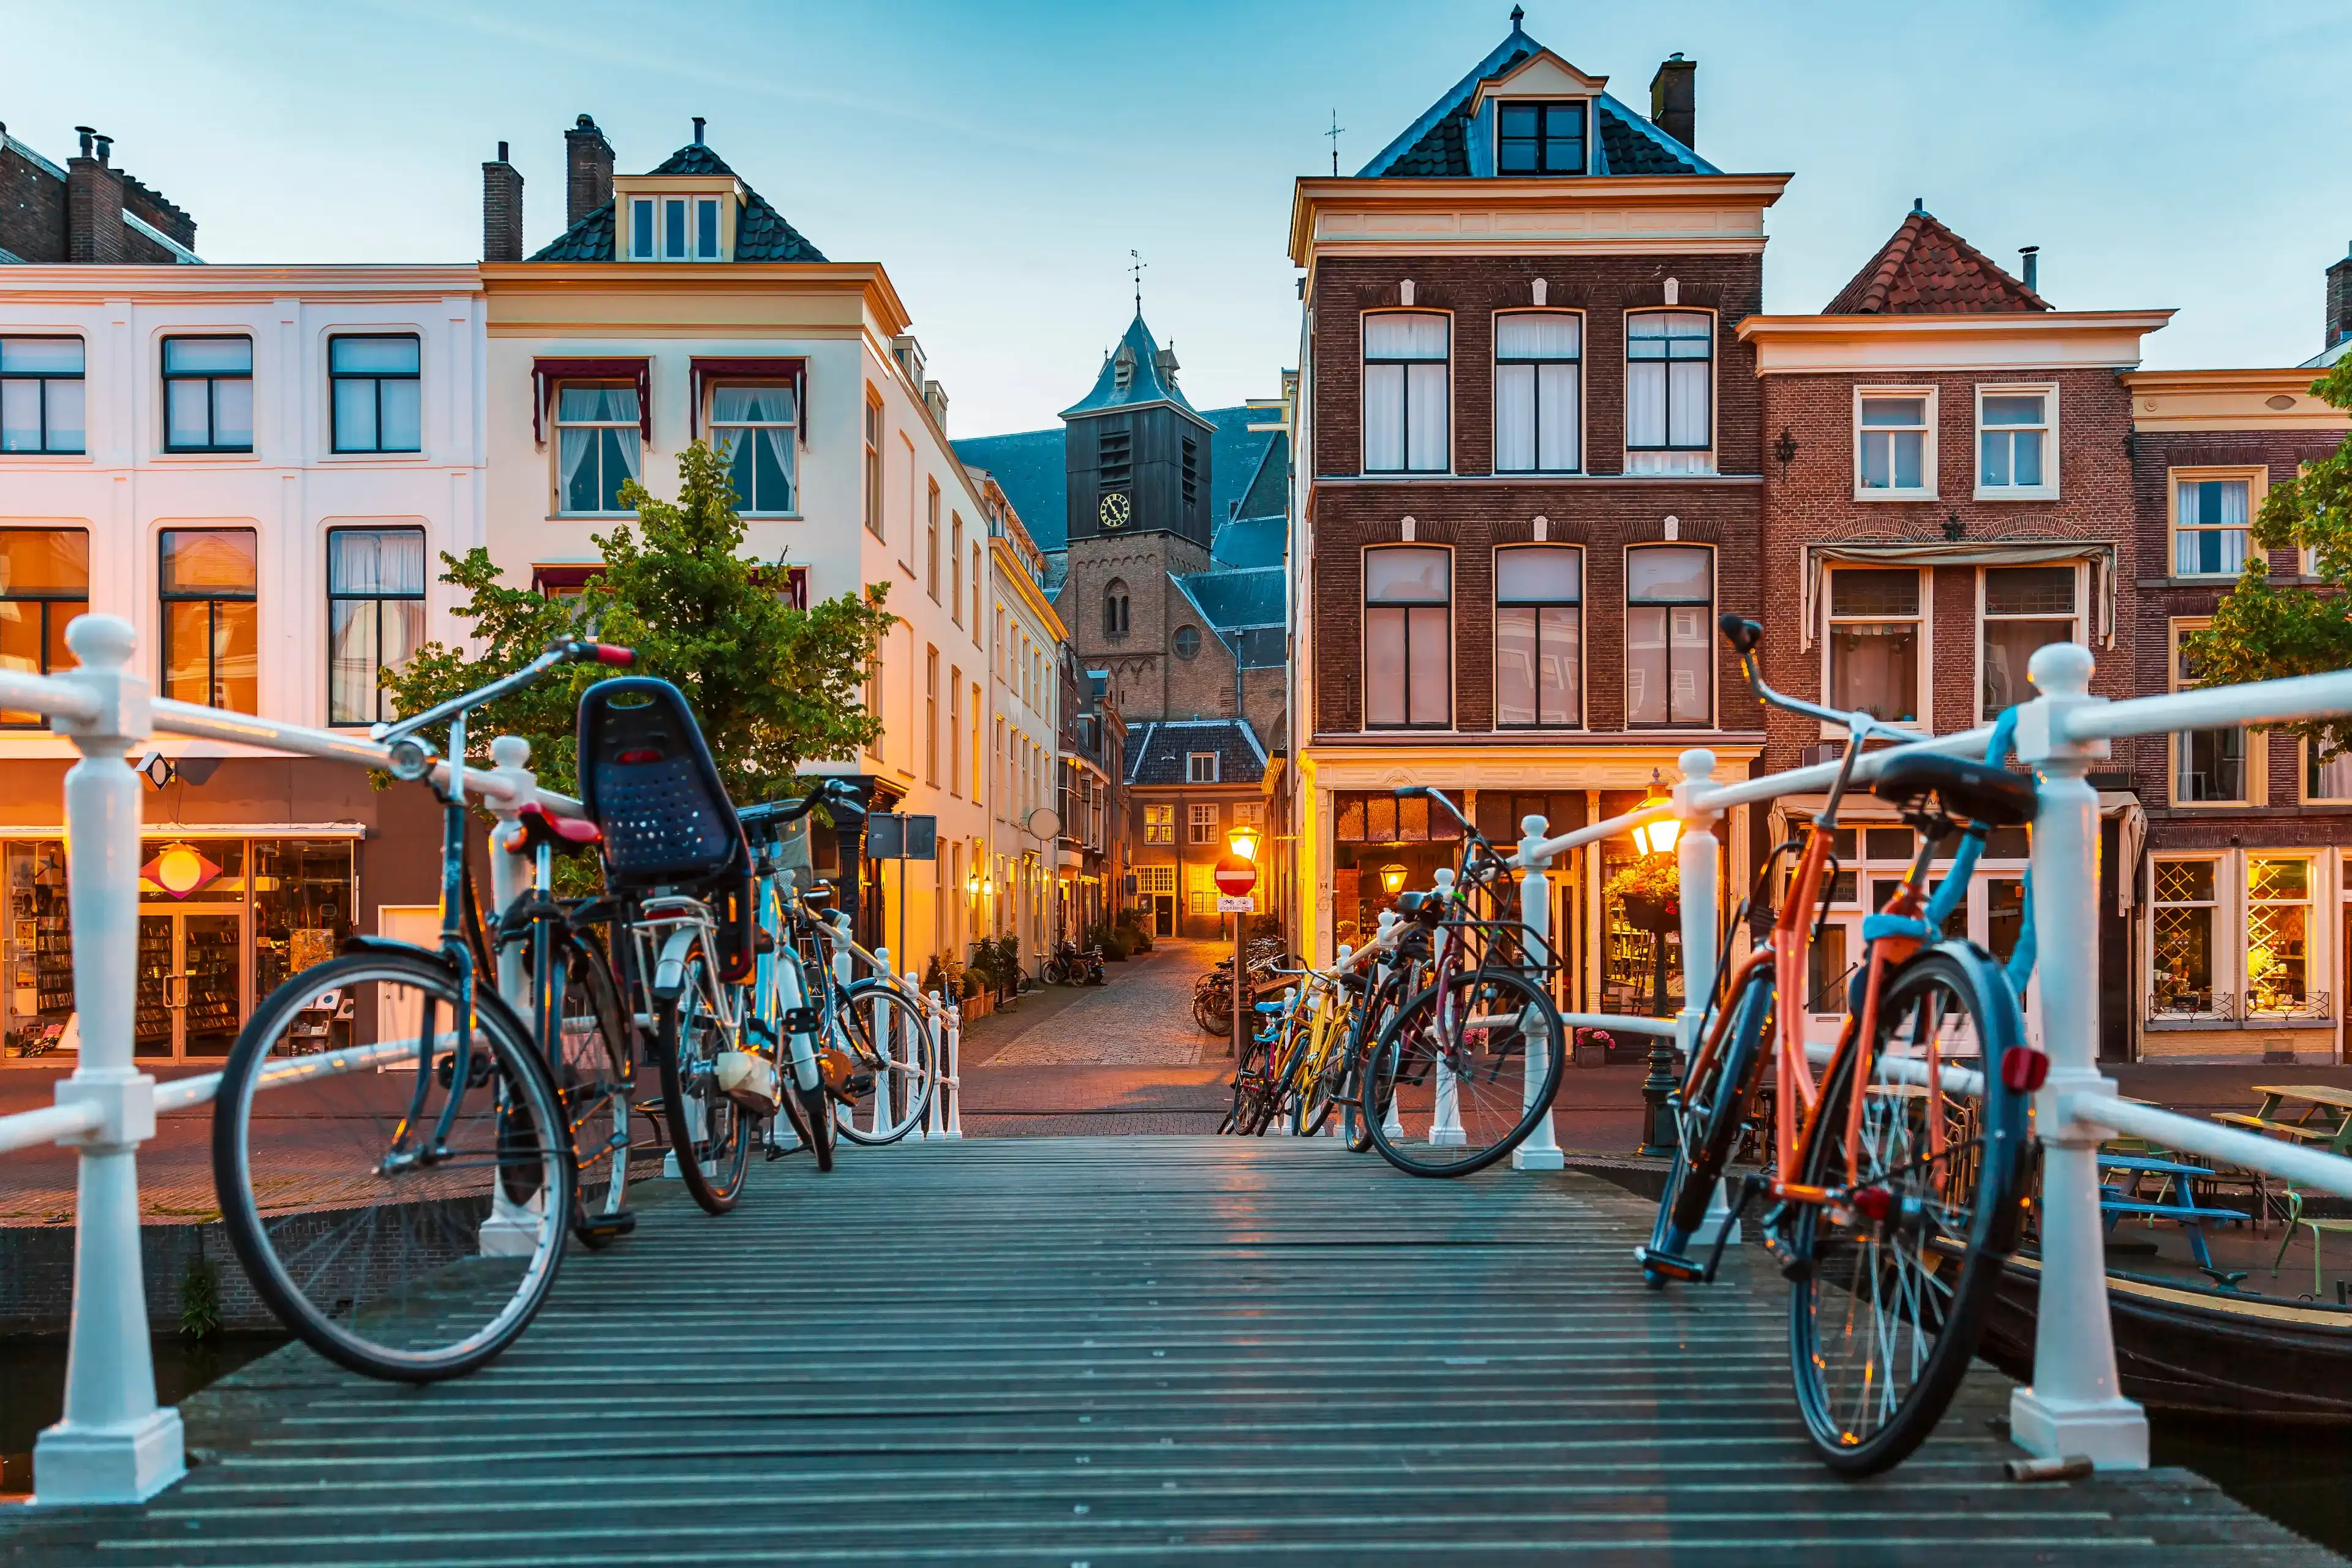 Best Leiden hotels. Cheap hotels in Leiden, Netherlands